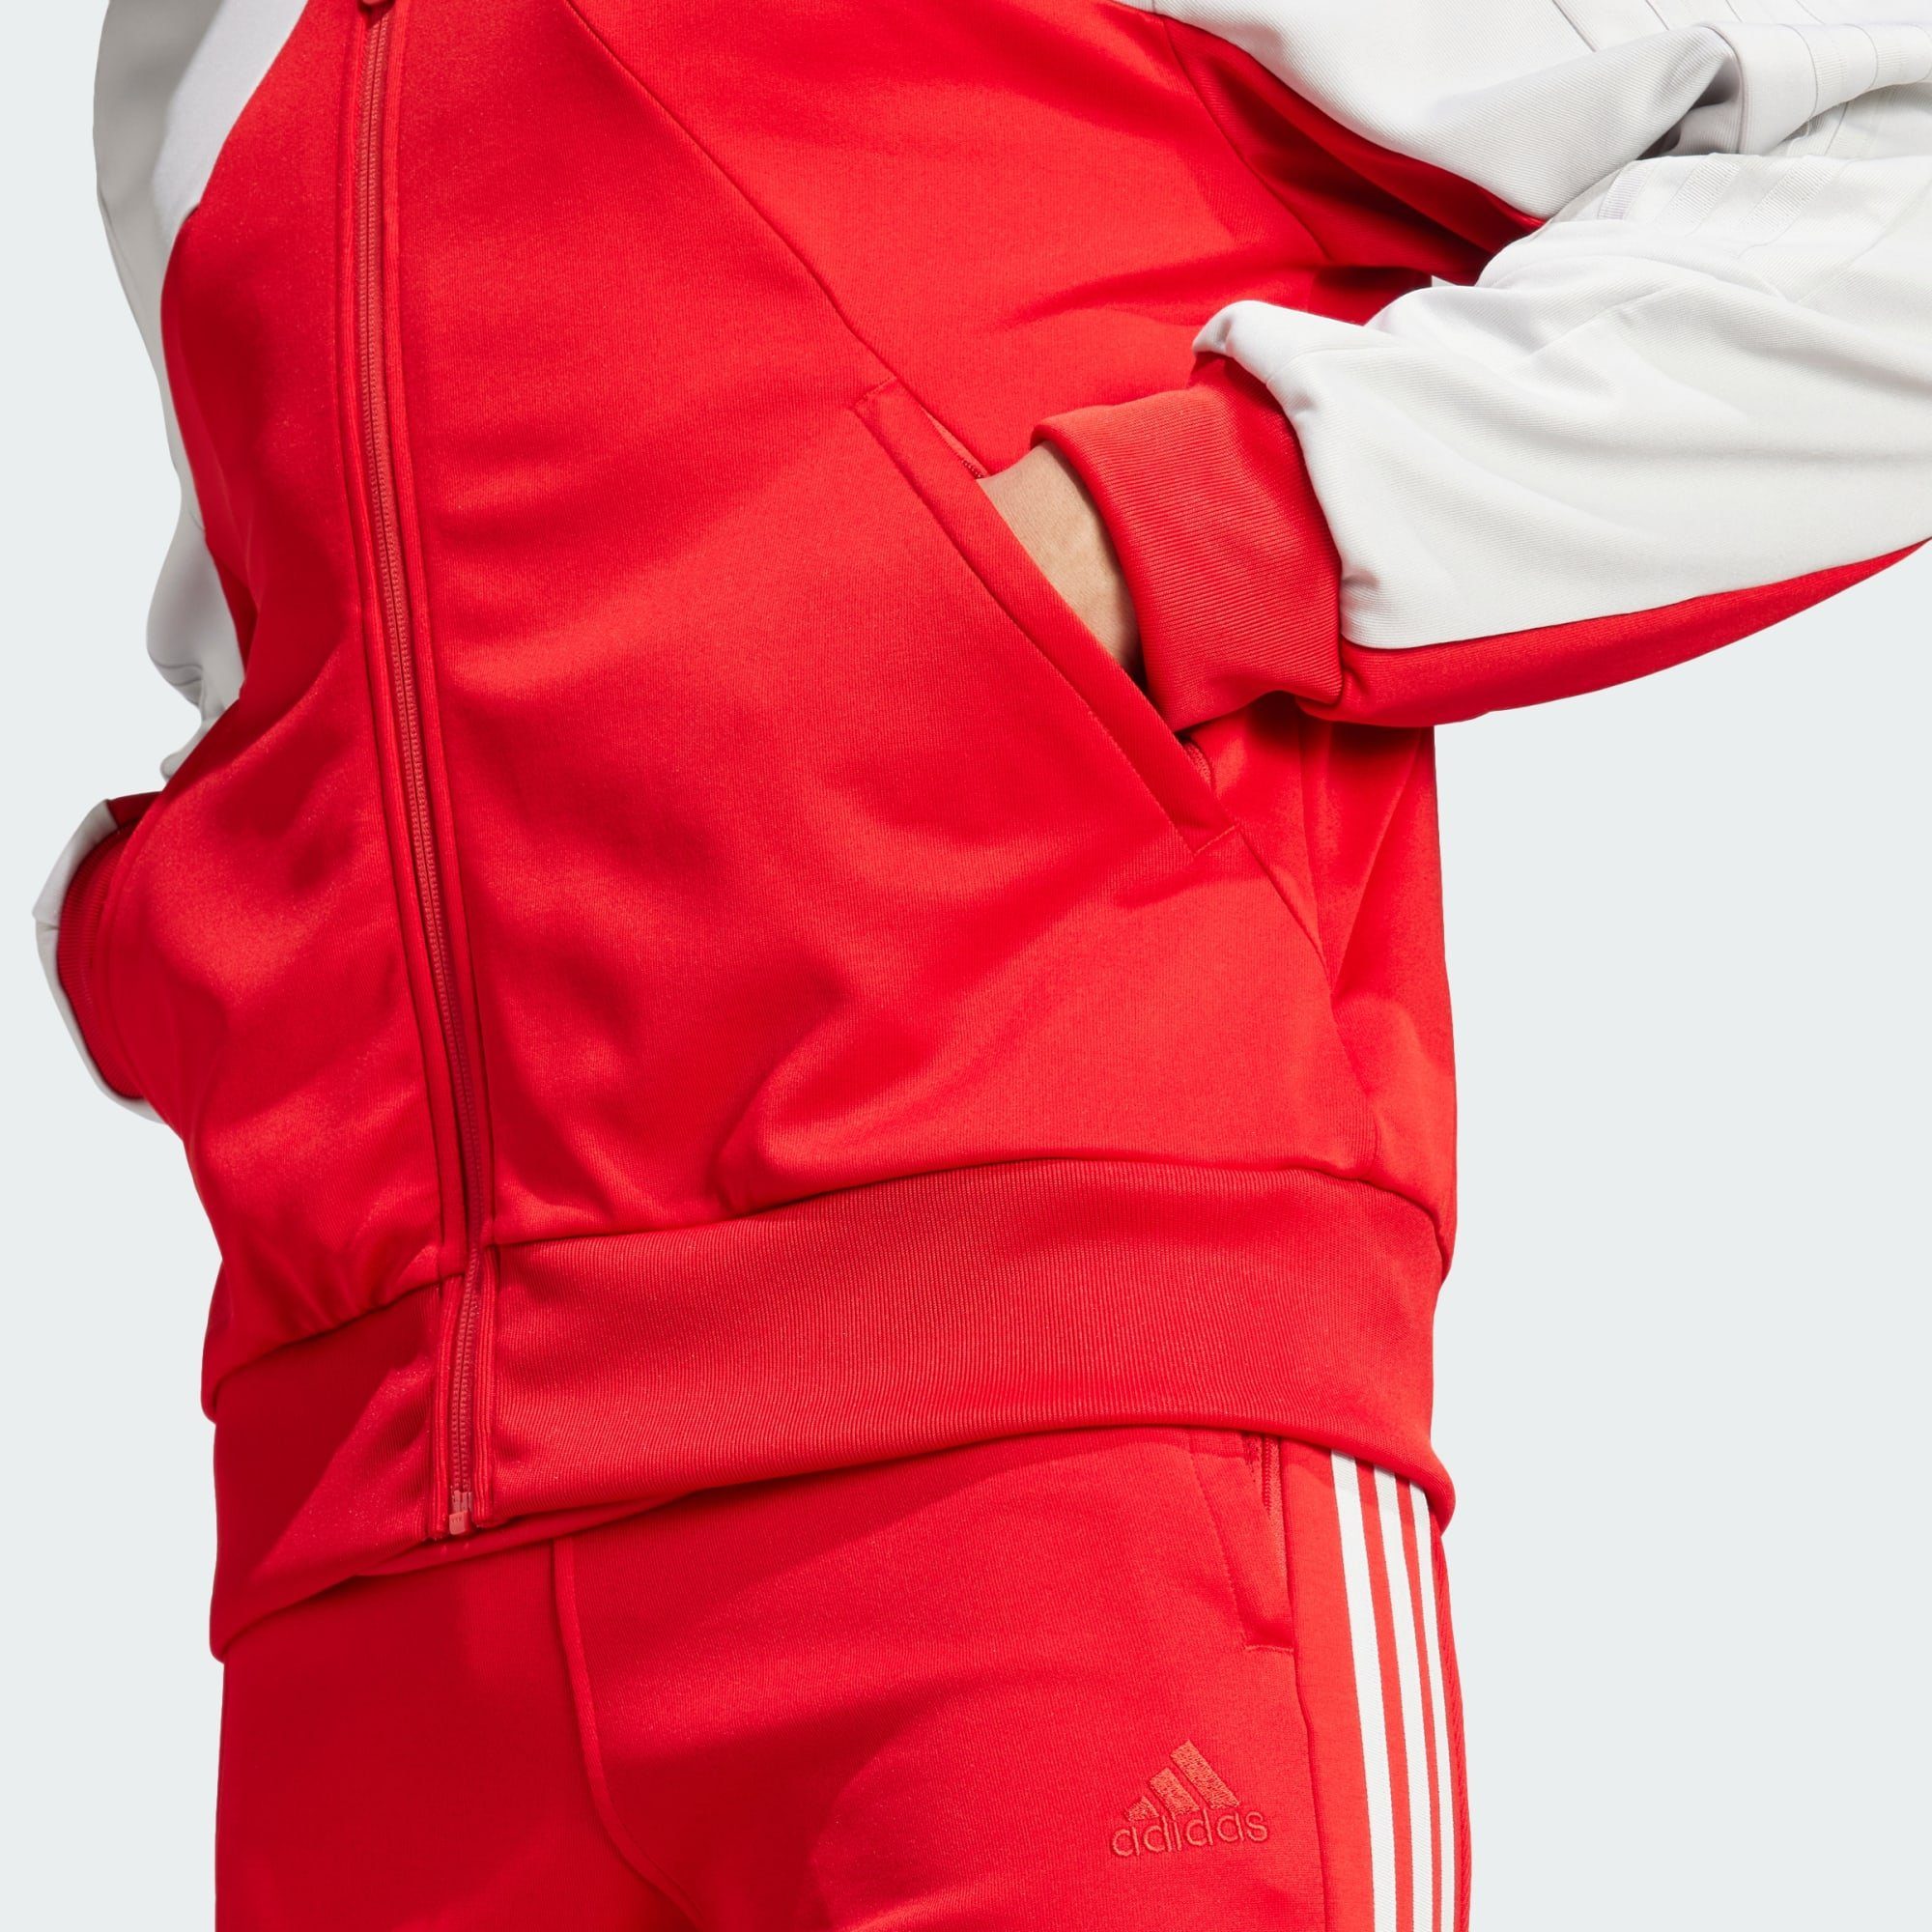 Better Scarlet TRAININGSJACKE Sportswear TIRO Funktionsjacke adidas